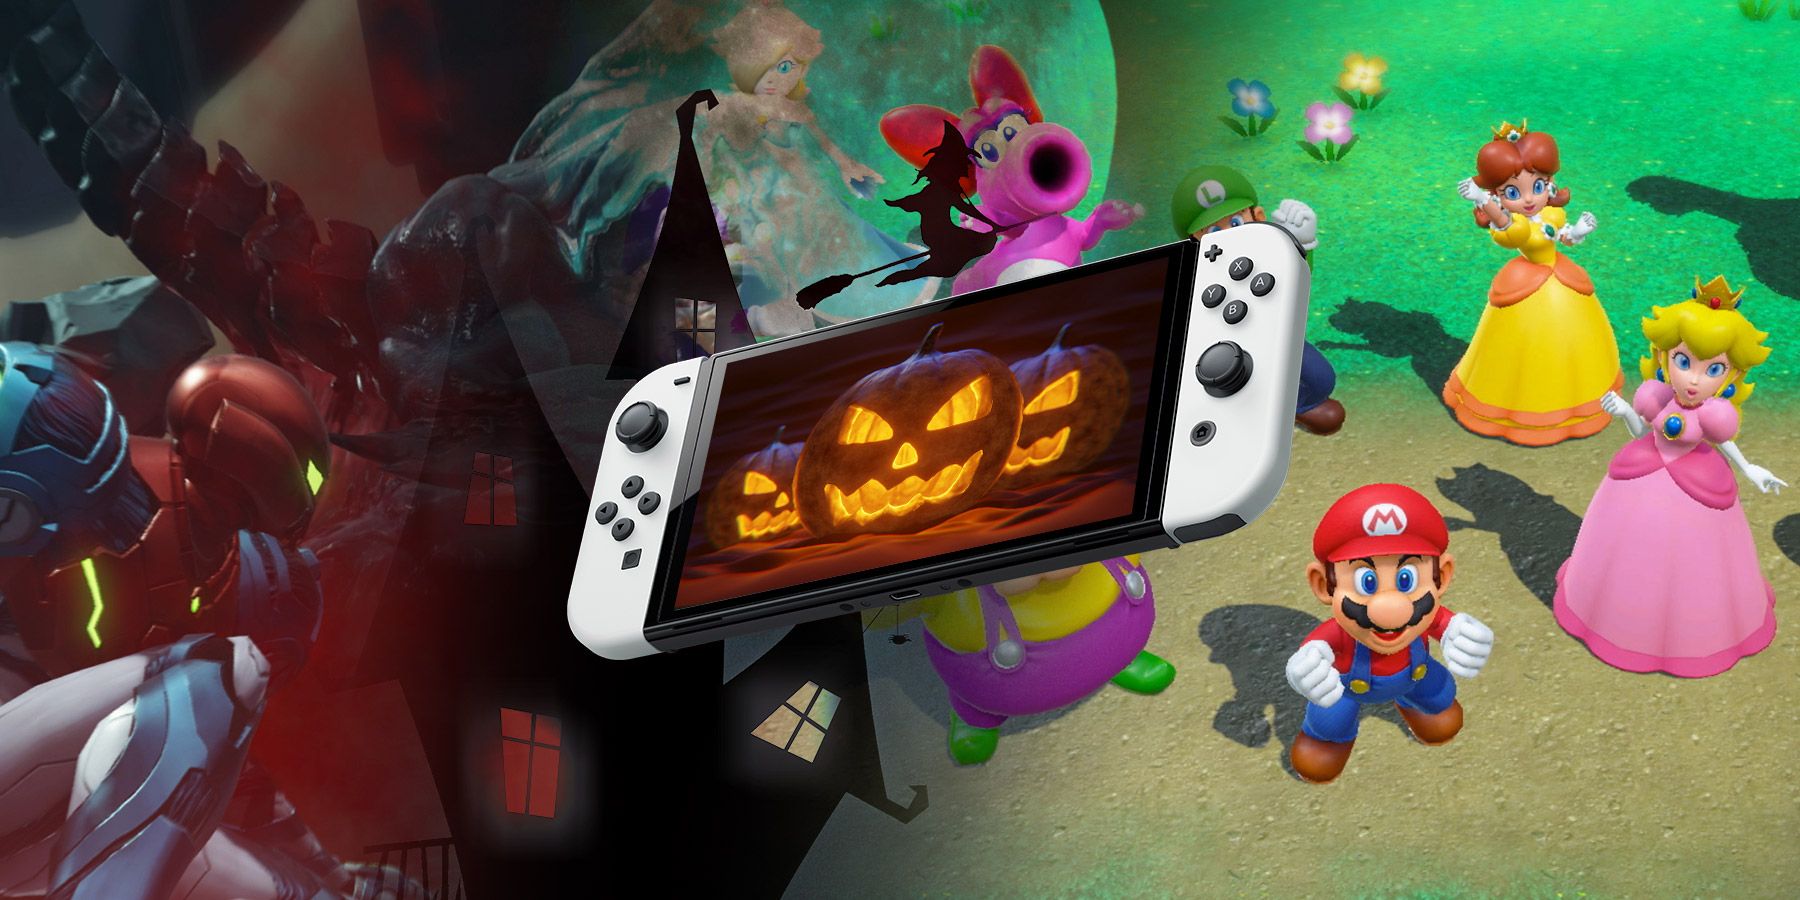 Os fãs da Nintendo têm muito o que esperar em outubro